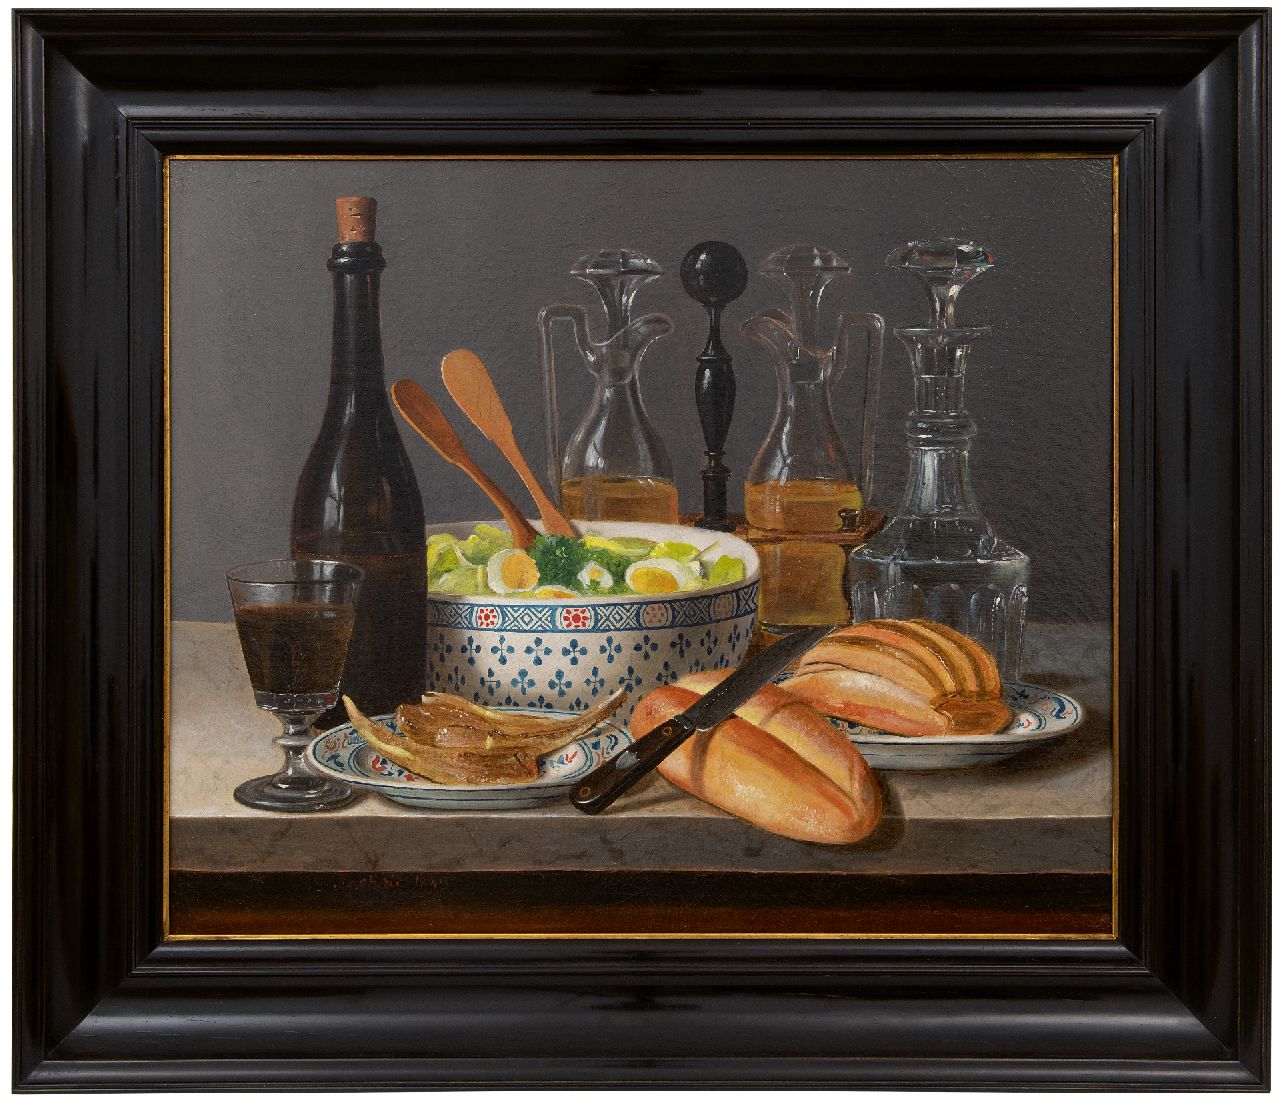 Joncherie G.G.  | Gabriel Germain Joncherie | Schilderijen te koop aangeboden | Le déjeuner, olieverf op doek op paneel 50,2 x 61,0 cm, gesigneerd linksonder en gedateerd 1843